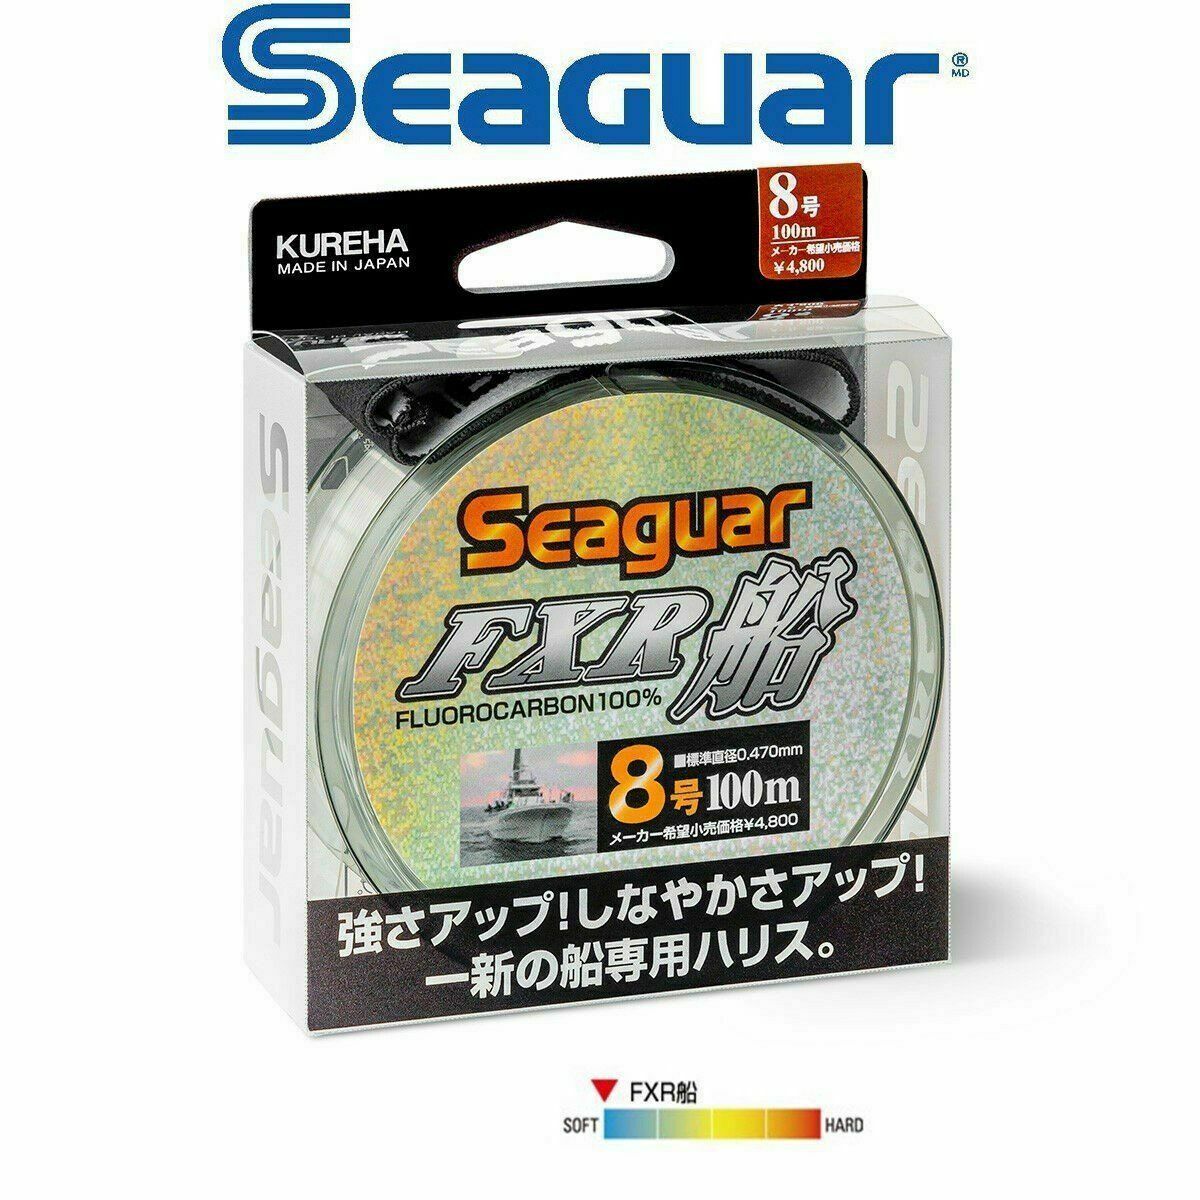 Seaguar FXR Fune %100 Fluoro Carbon Misina 100mt 0.620 mm